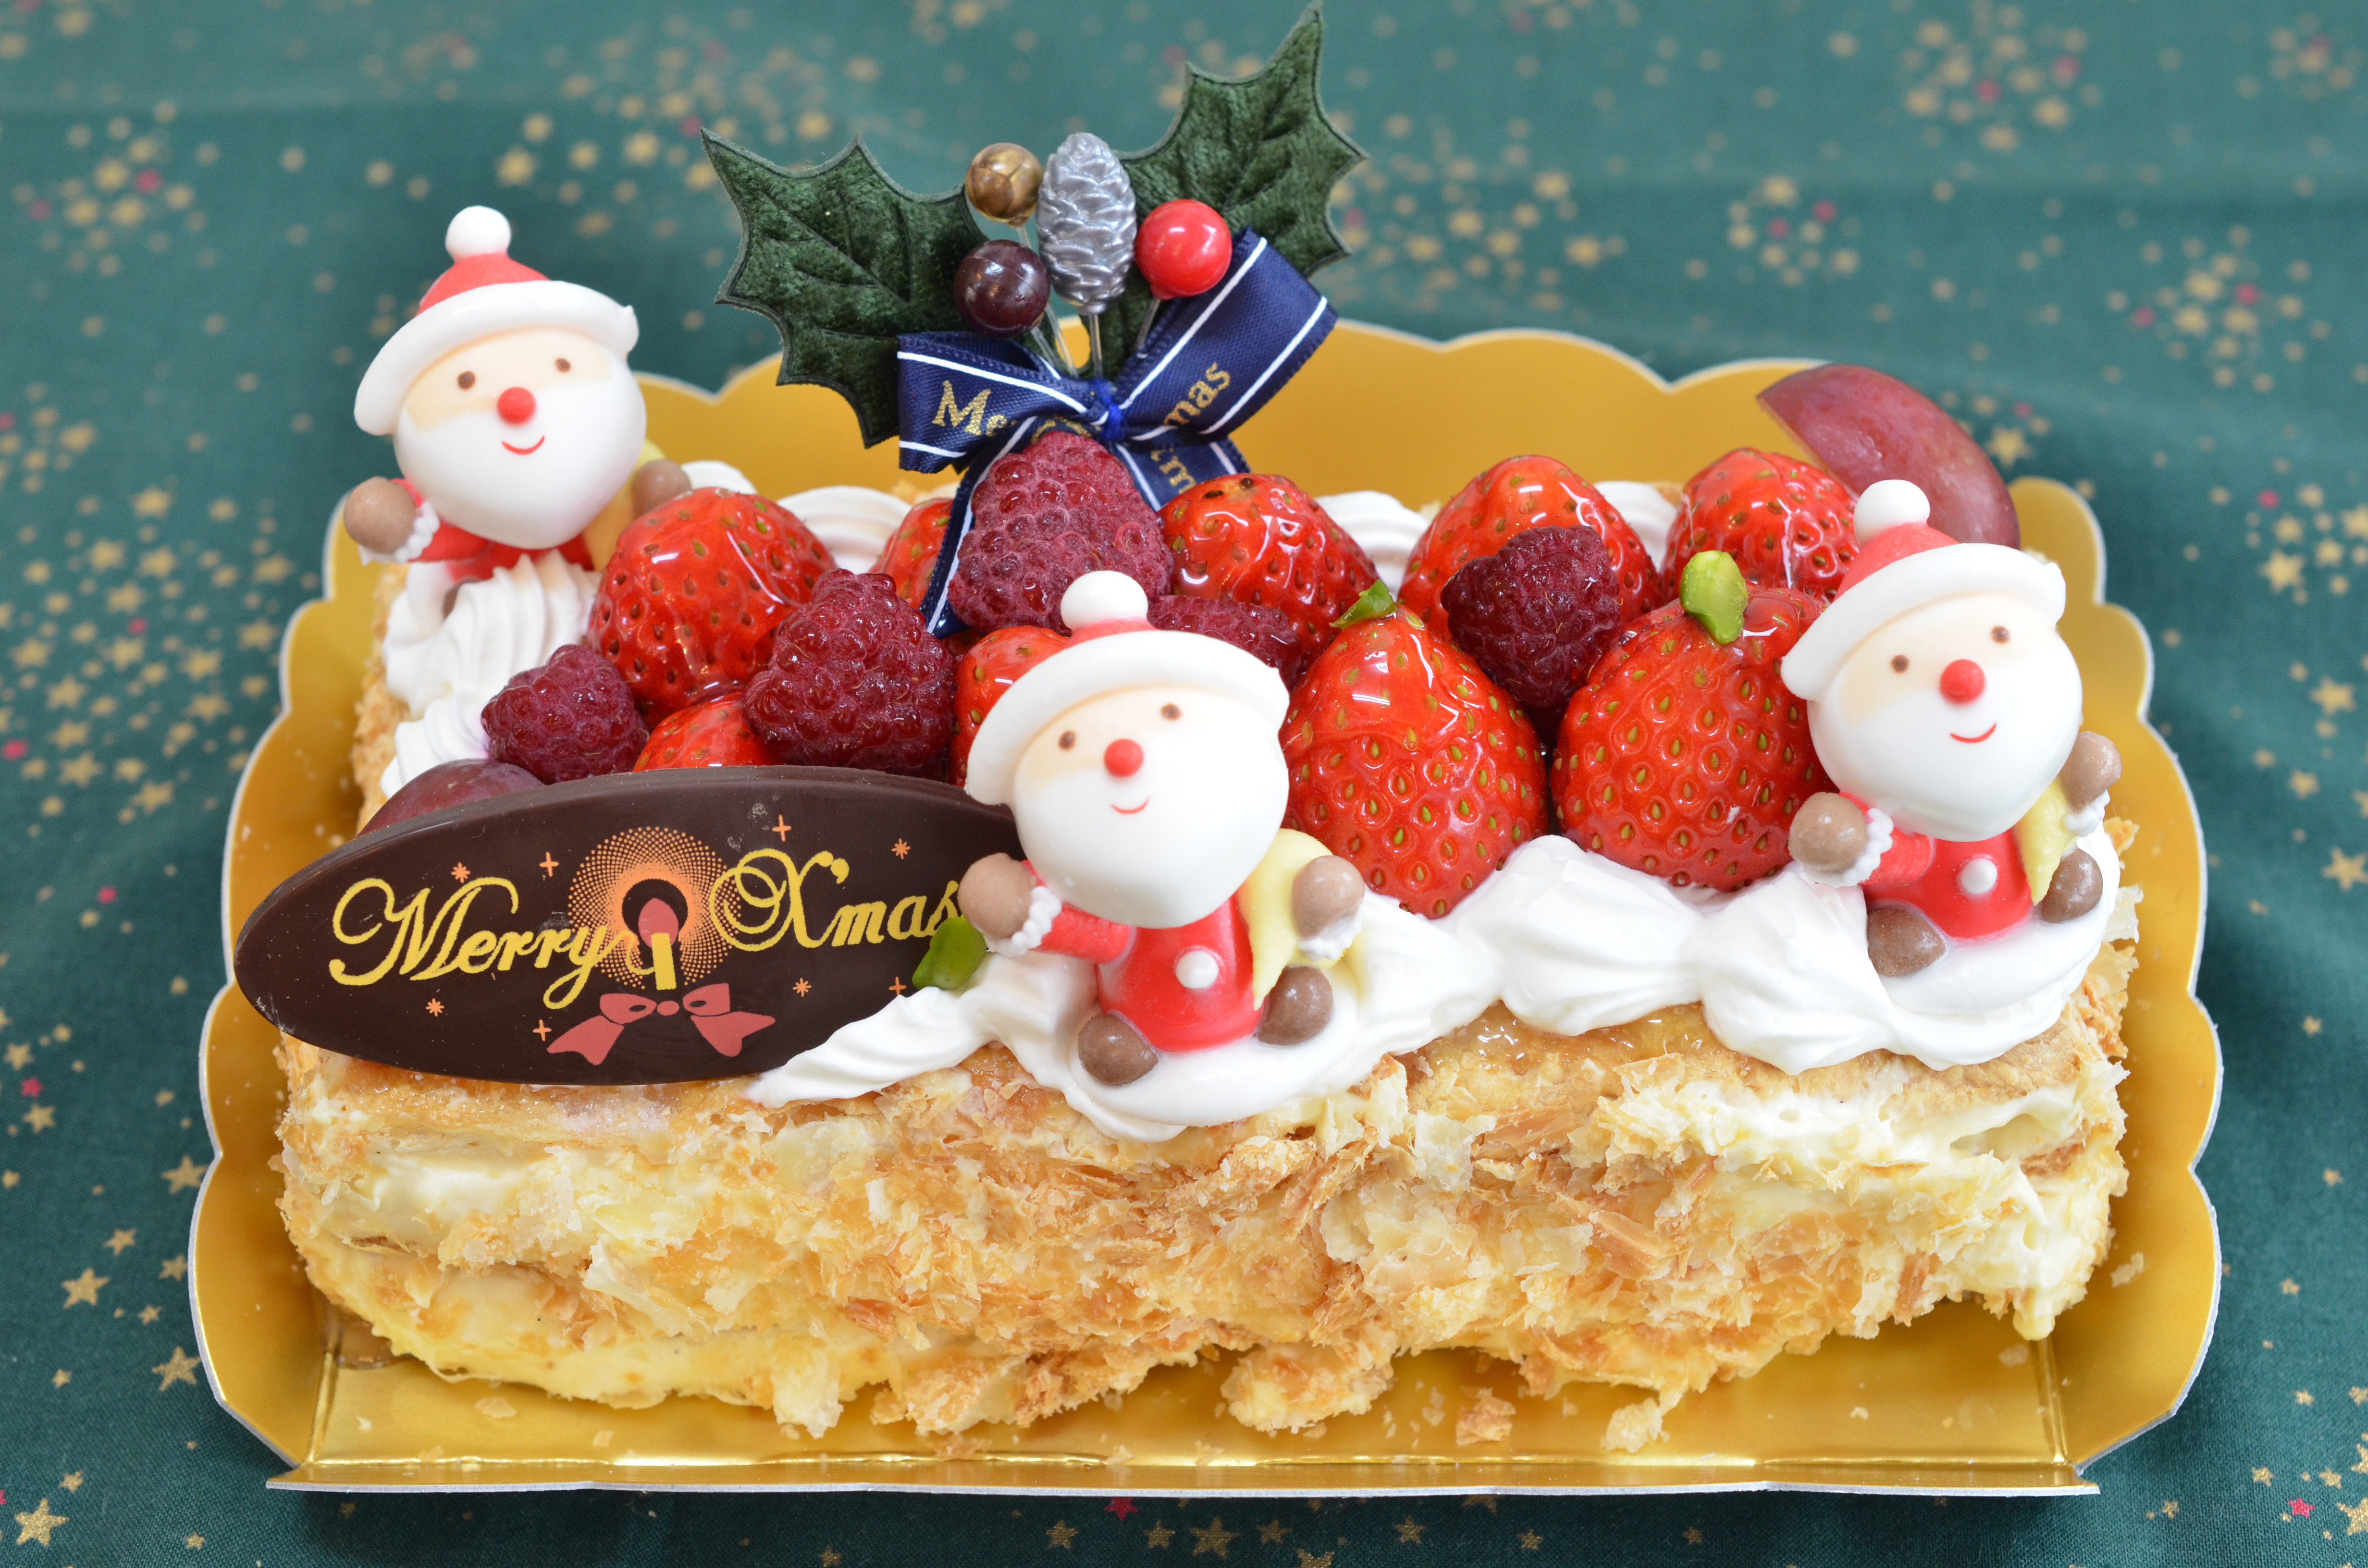 クリスマスケーキご予約中 フランス菓子 ダンファン